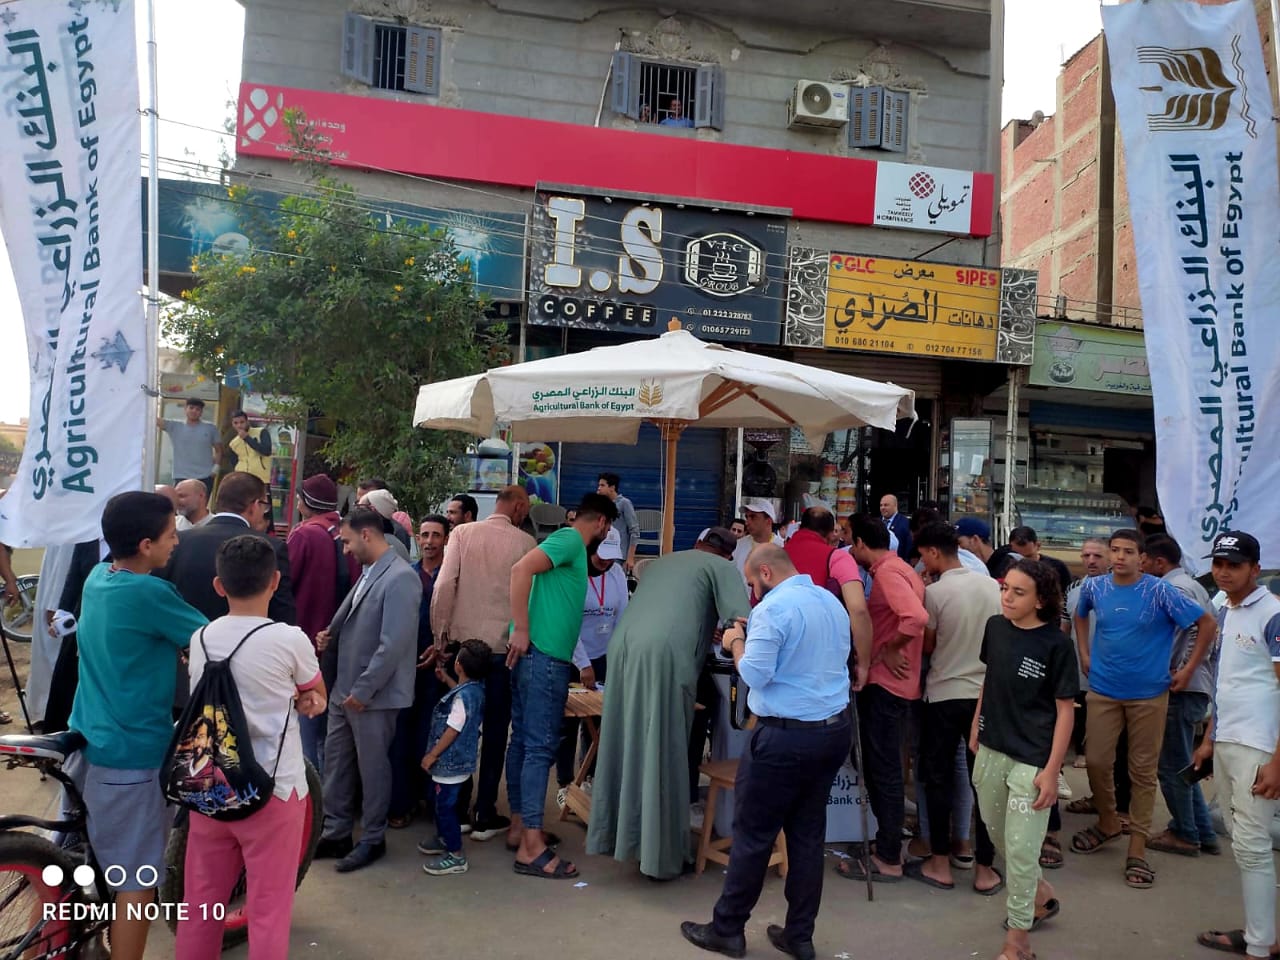 البنك الزراعي المصري ينشر قوافل «باب رزق» في كفر الشيخ